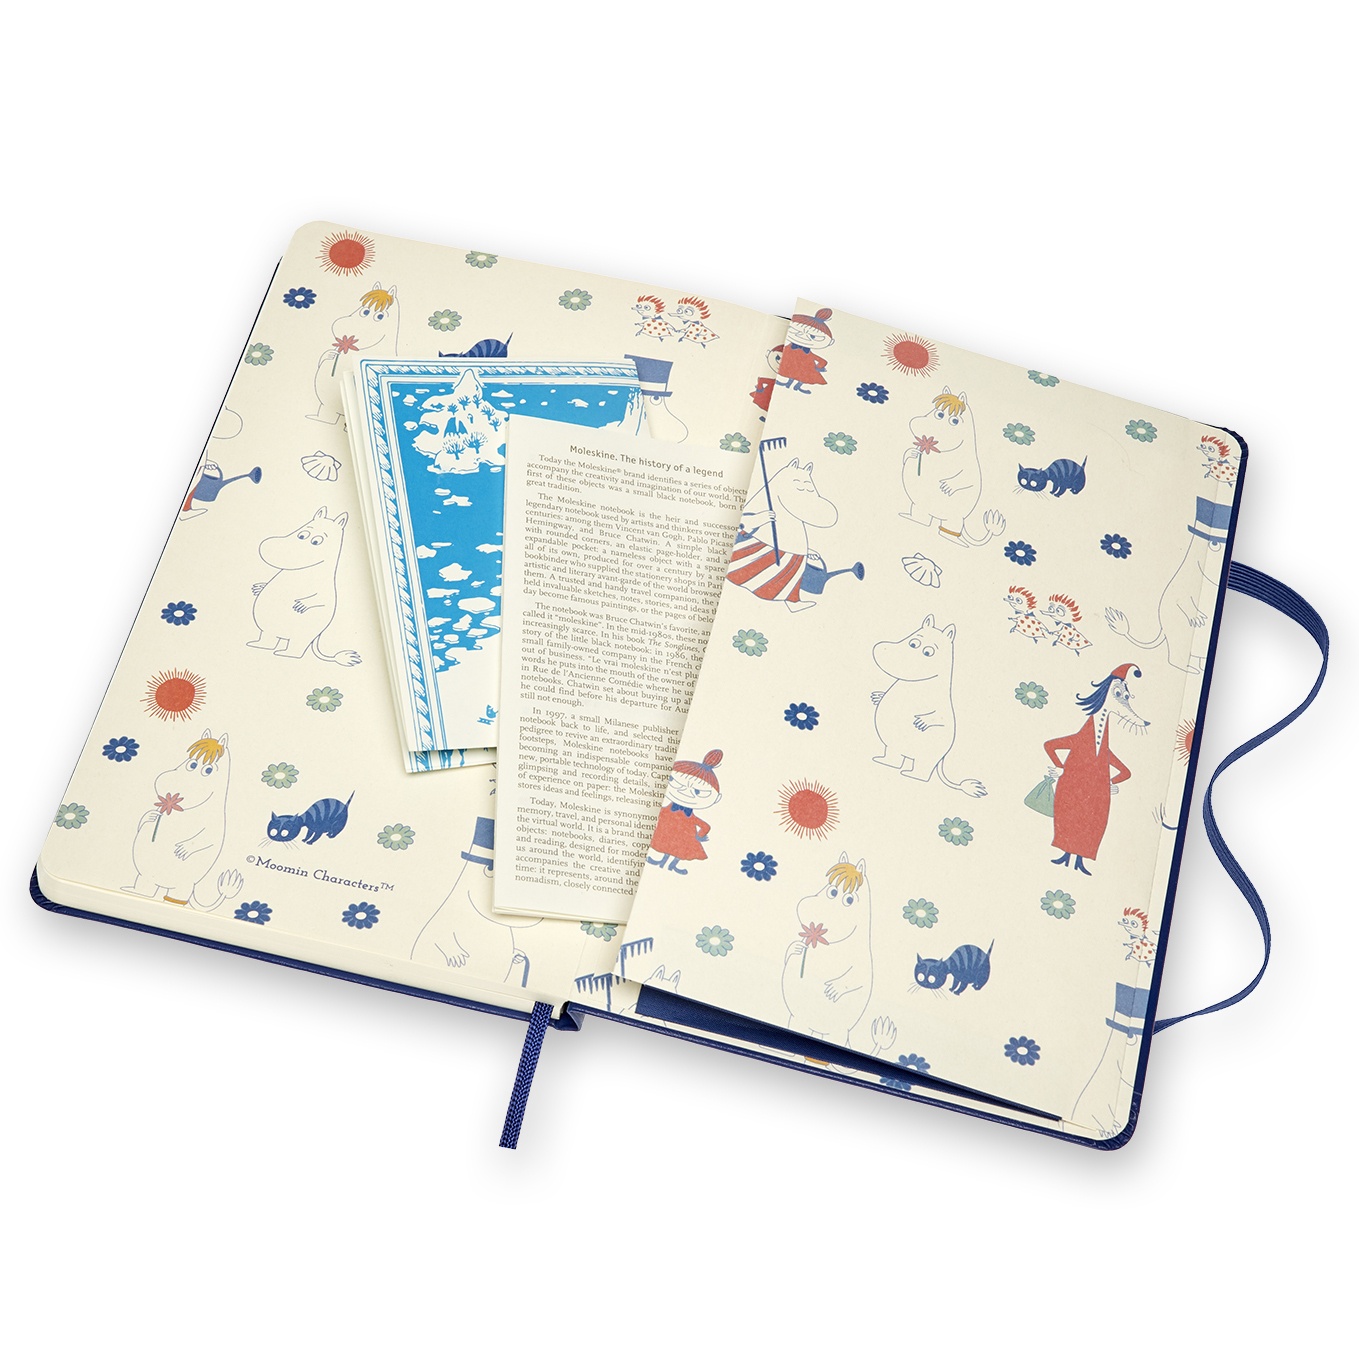 Hard Cover Large Moomin Blue Ruled i gruppen Papper & Block / Skriva och anteckna / Anteckningsböcker hos Pen Store (100373)